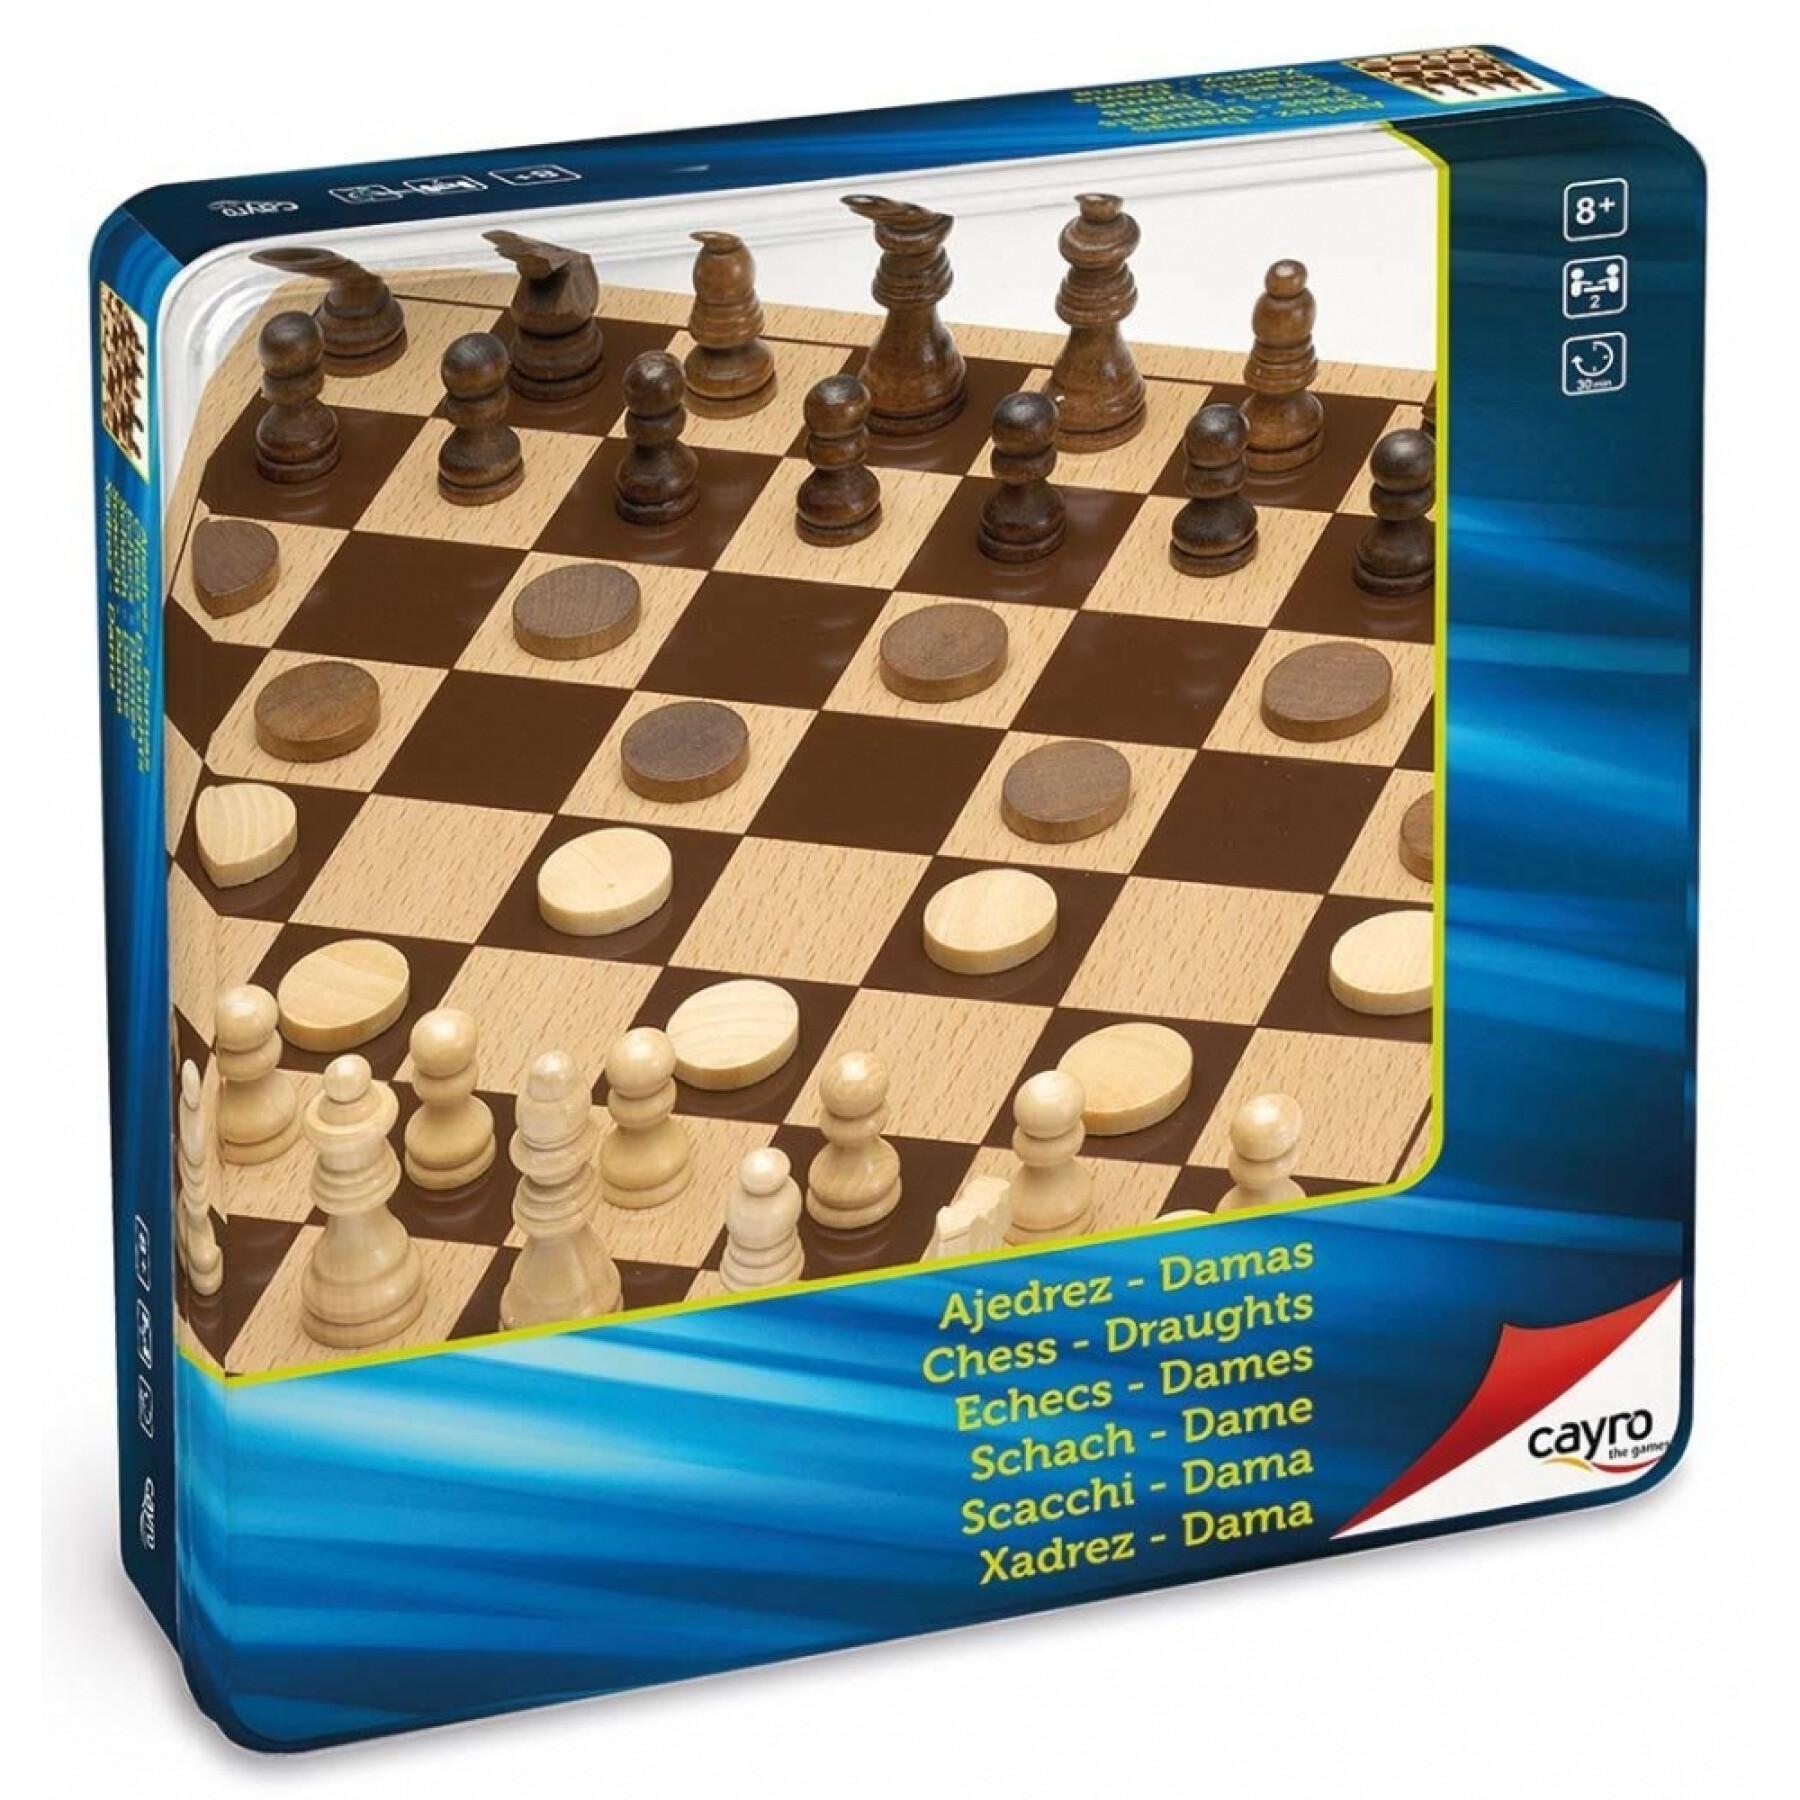 Schachspiele aus Holz in einer Metallbox Cayro